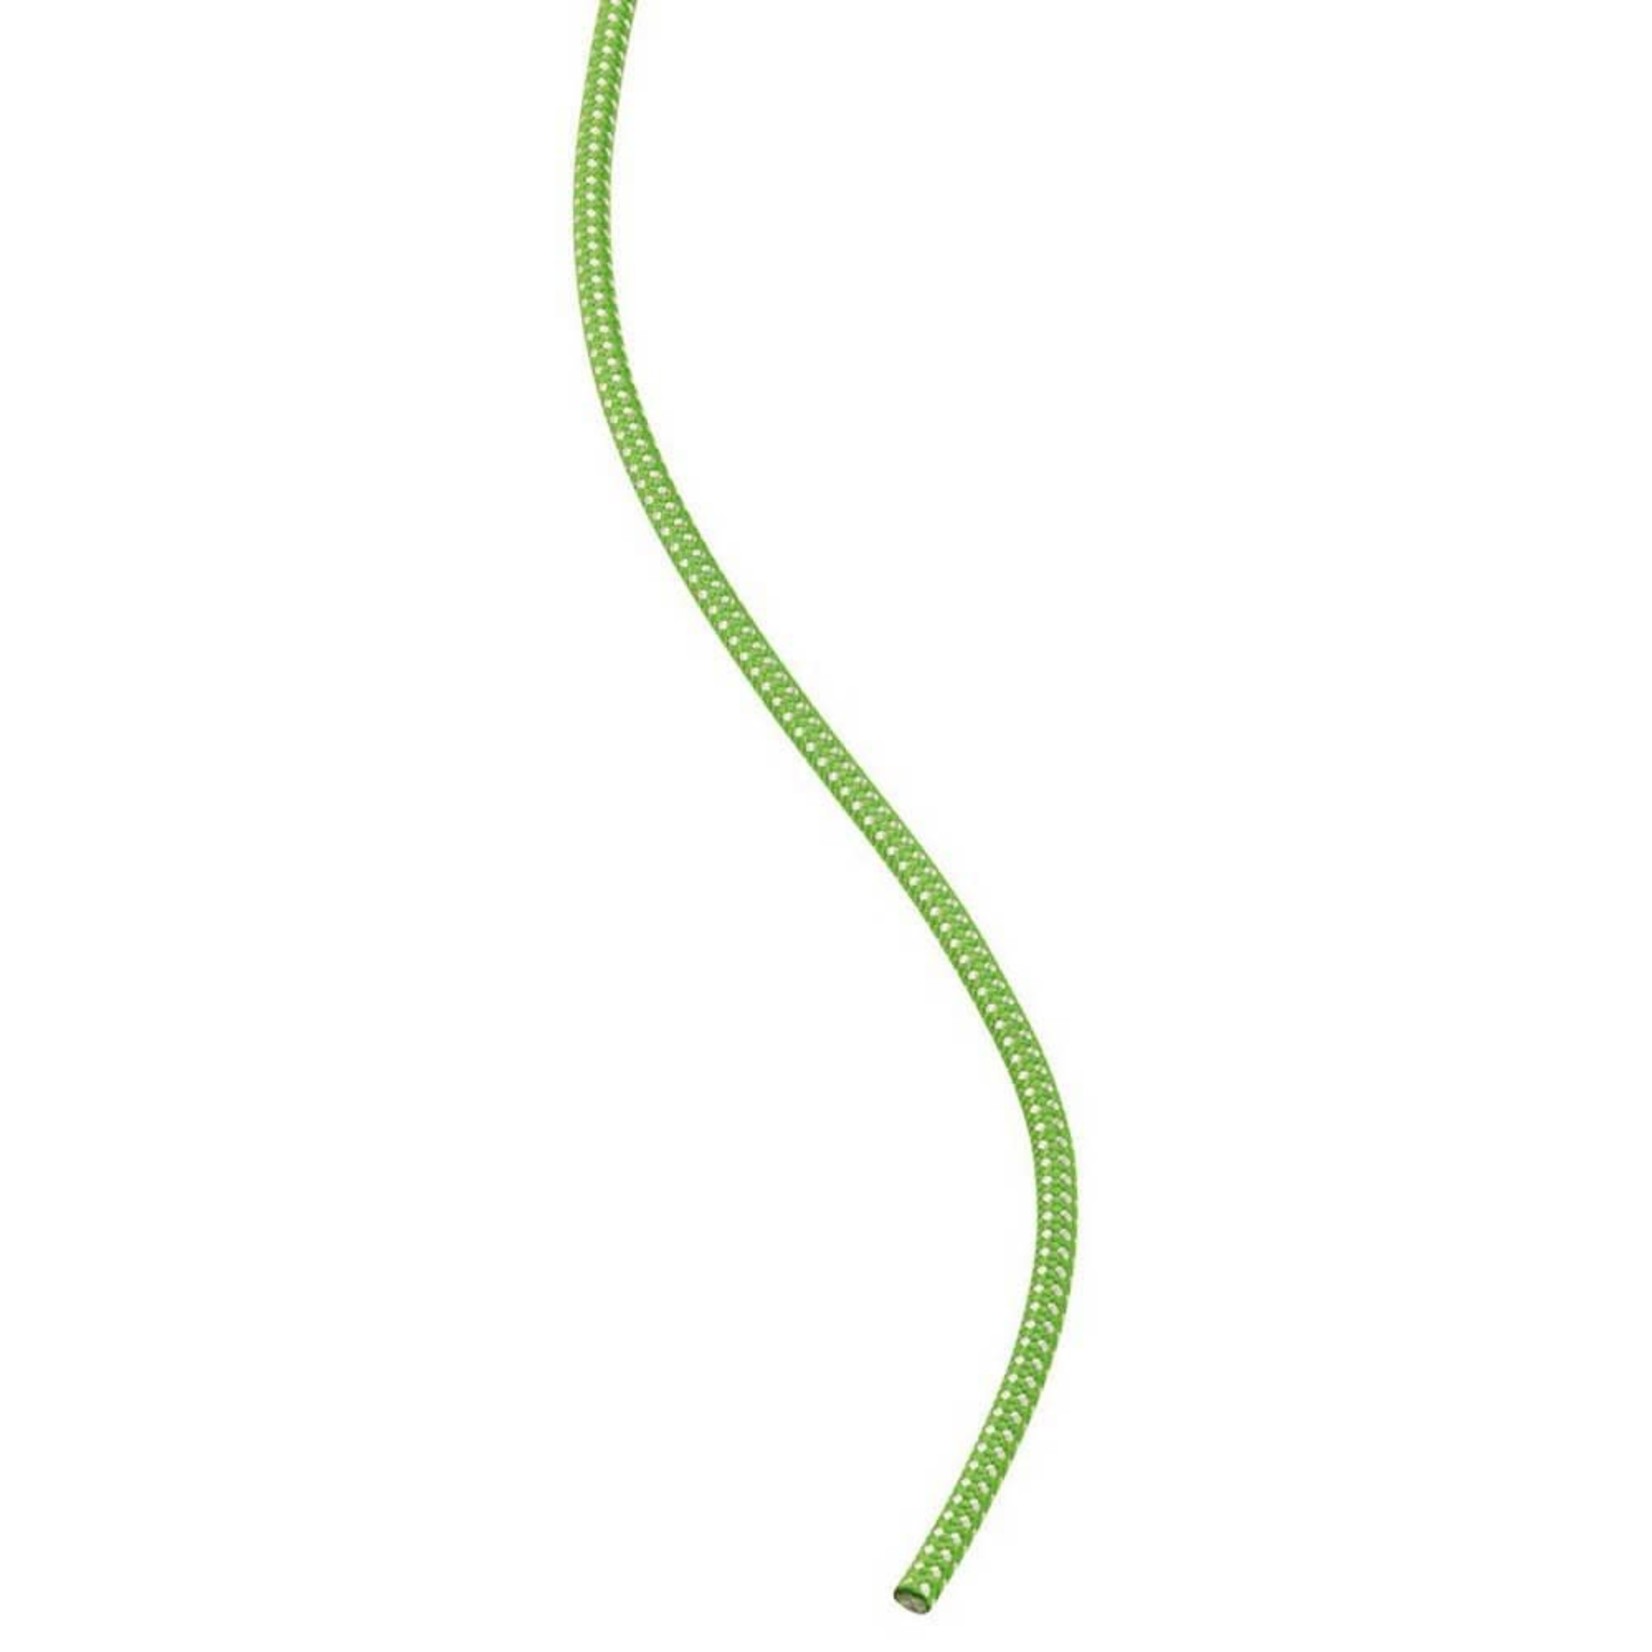 Petzl 6mm Cord Green (per metre)